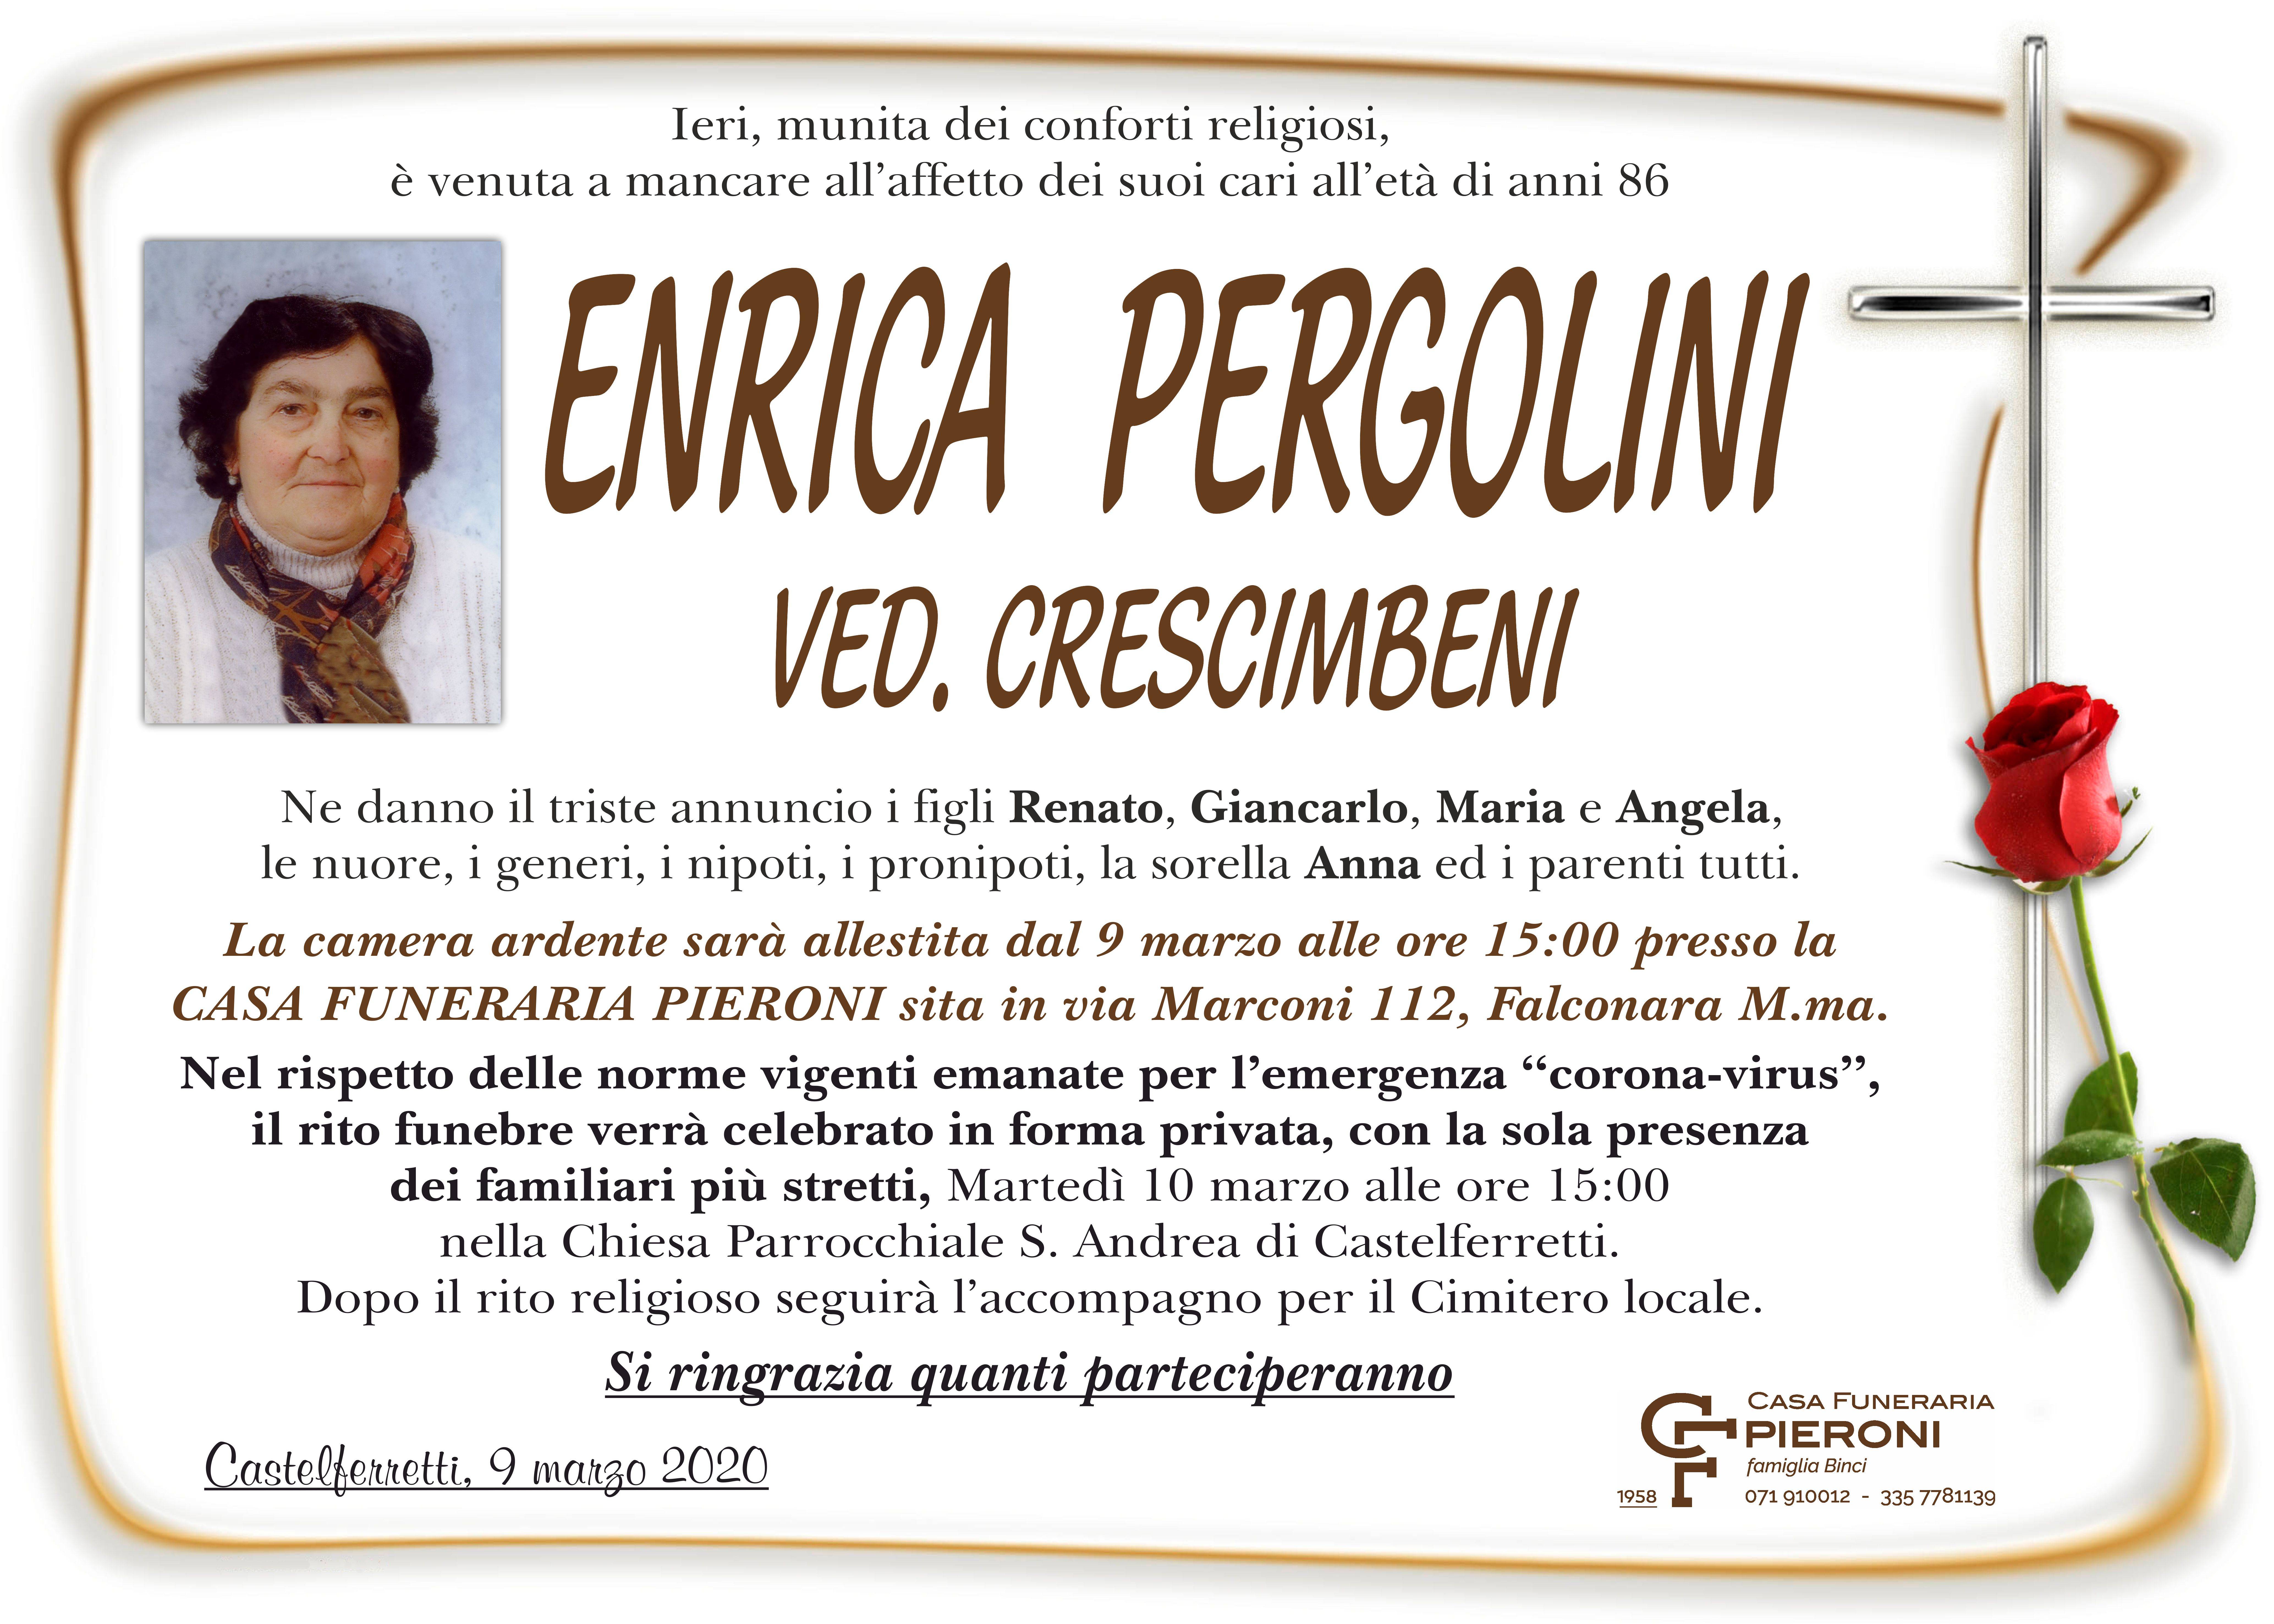 Enrica Pergolini